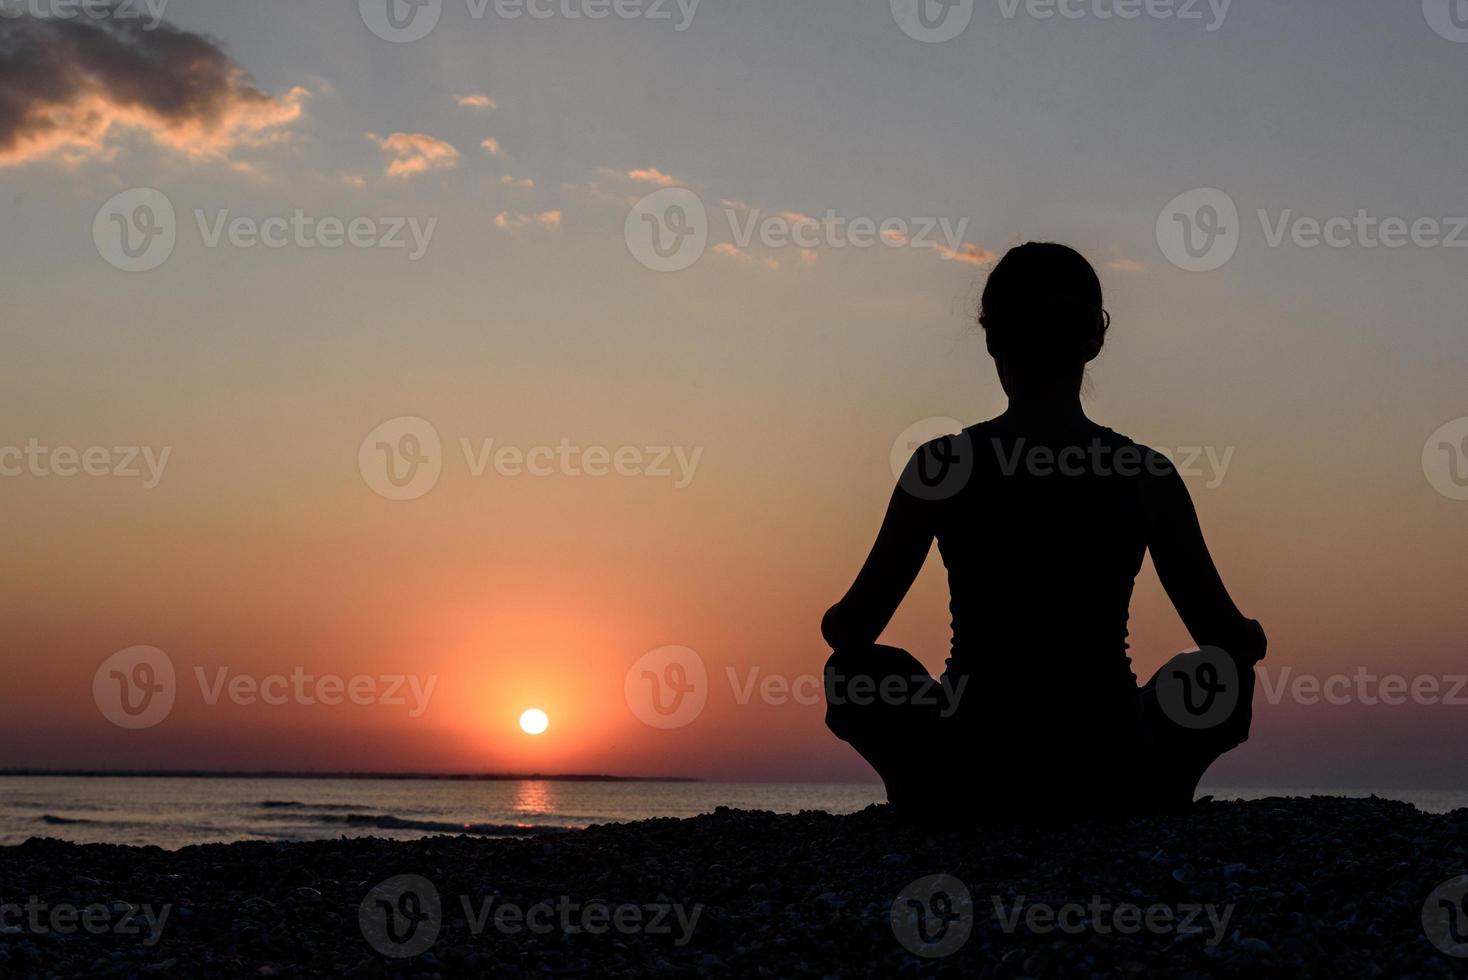 garota na praia ao amanhecer em ioga assana foto